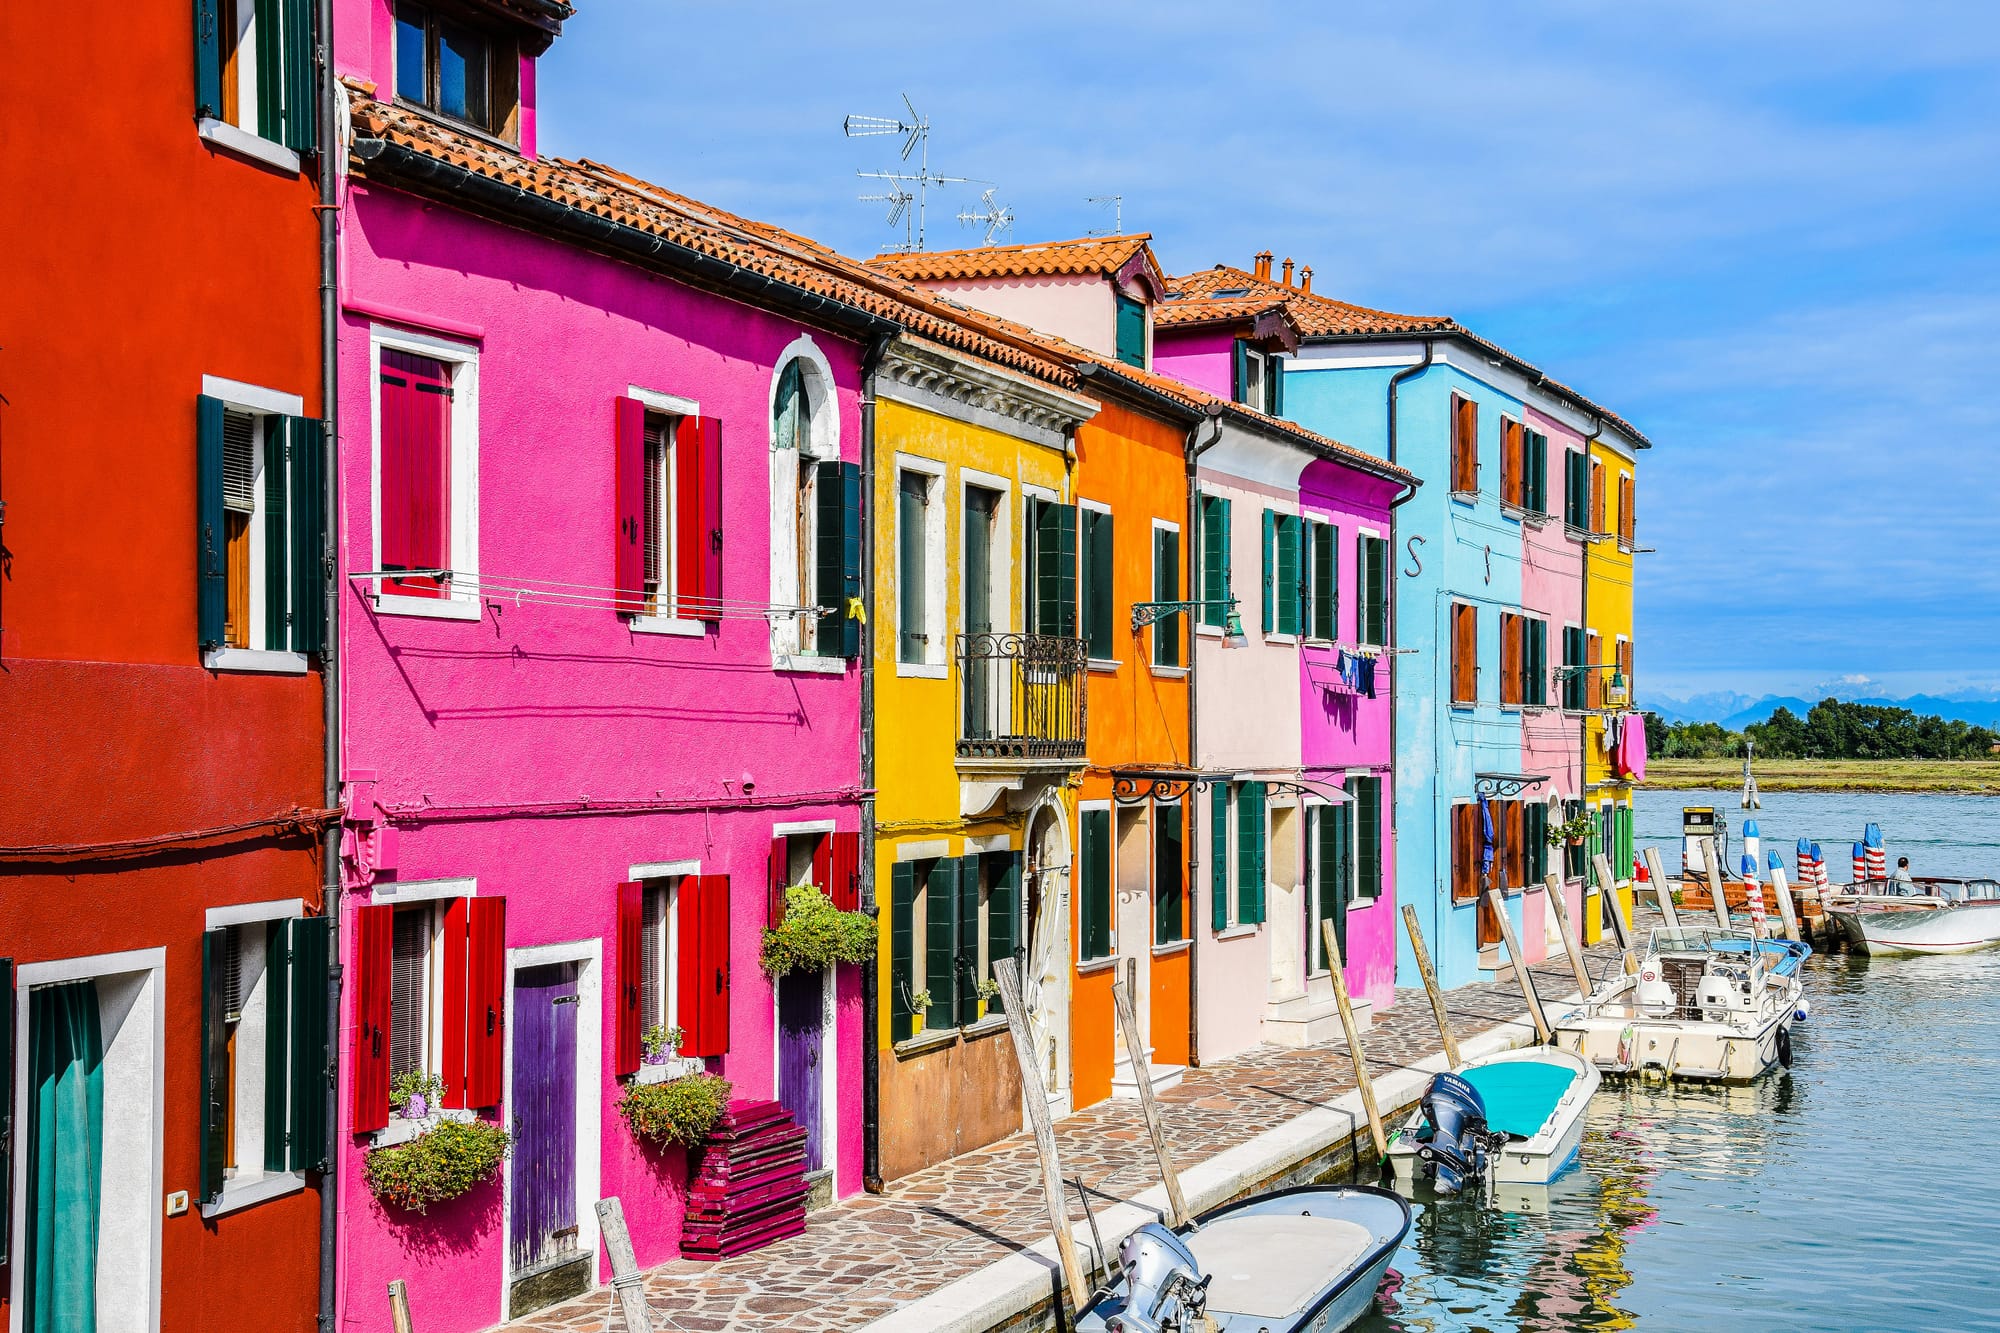 colorful buildings in Burano Island near Venice